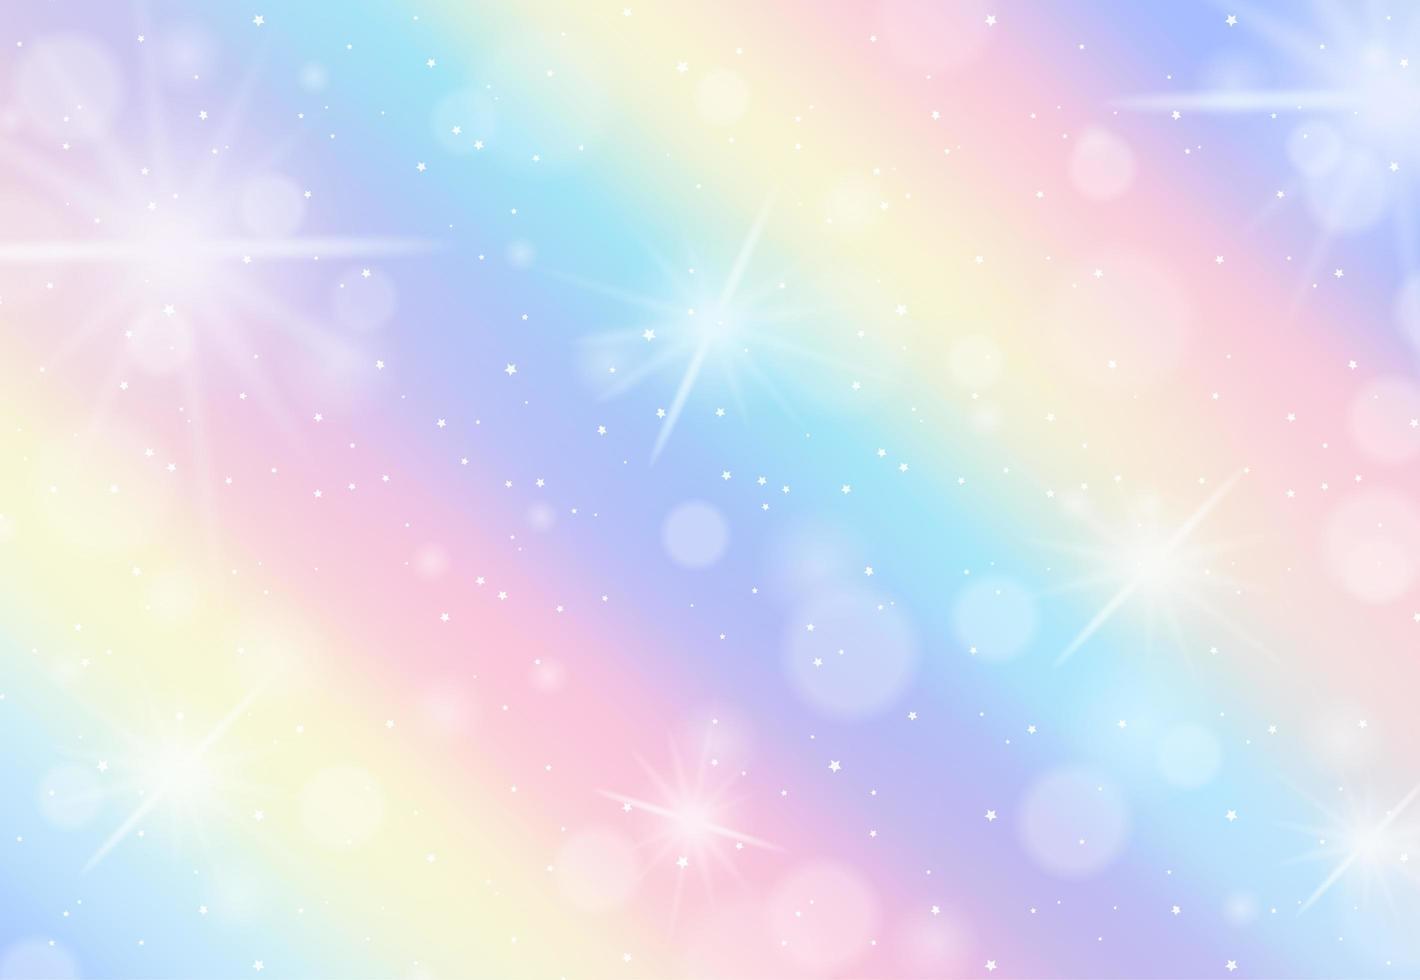 sfondo sfocato pastello arcobaleno vettore